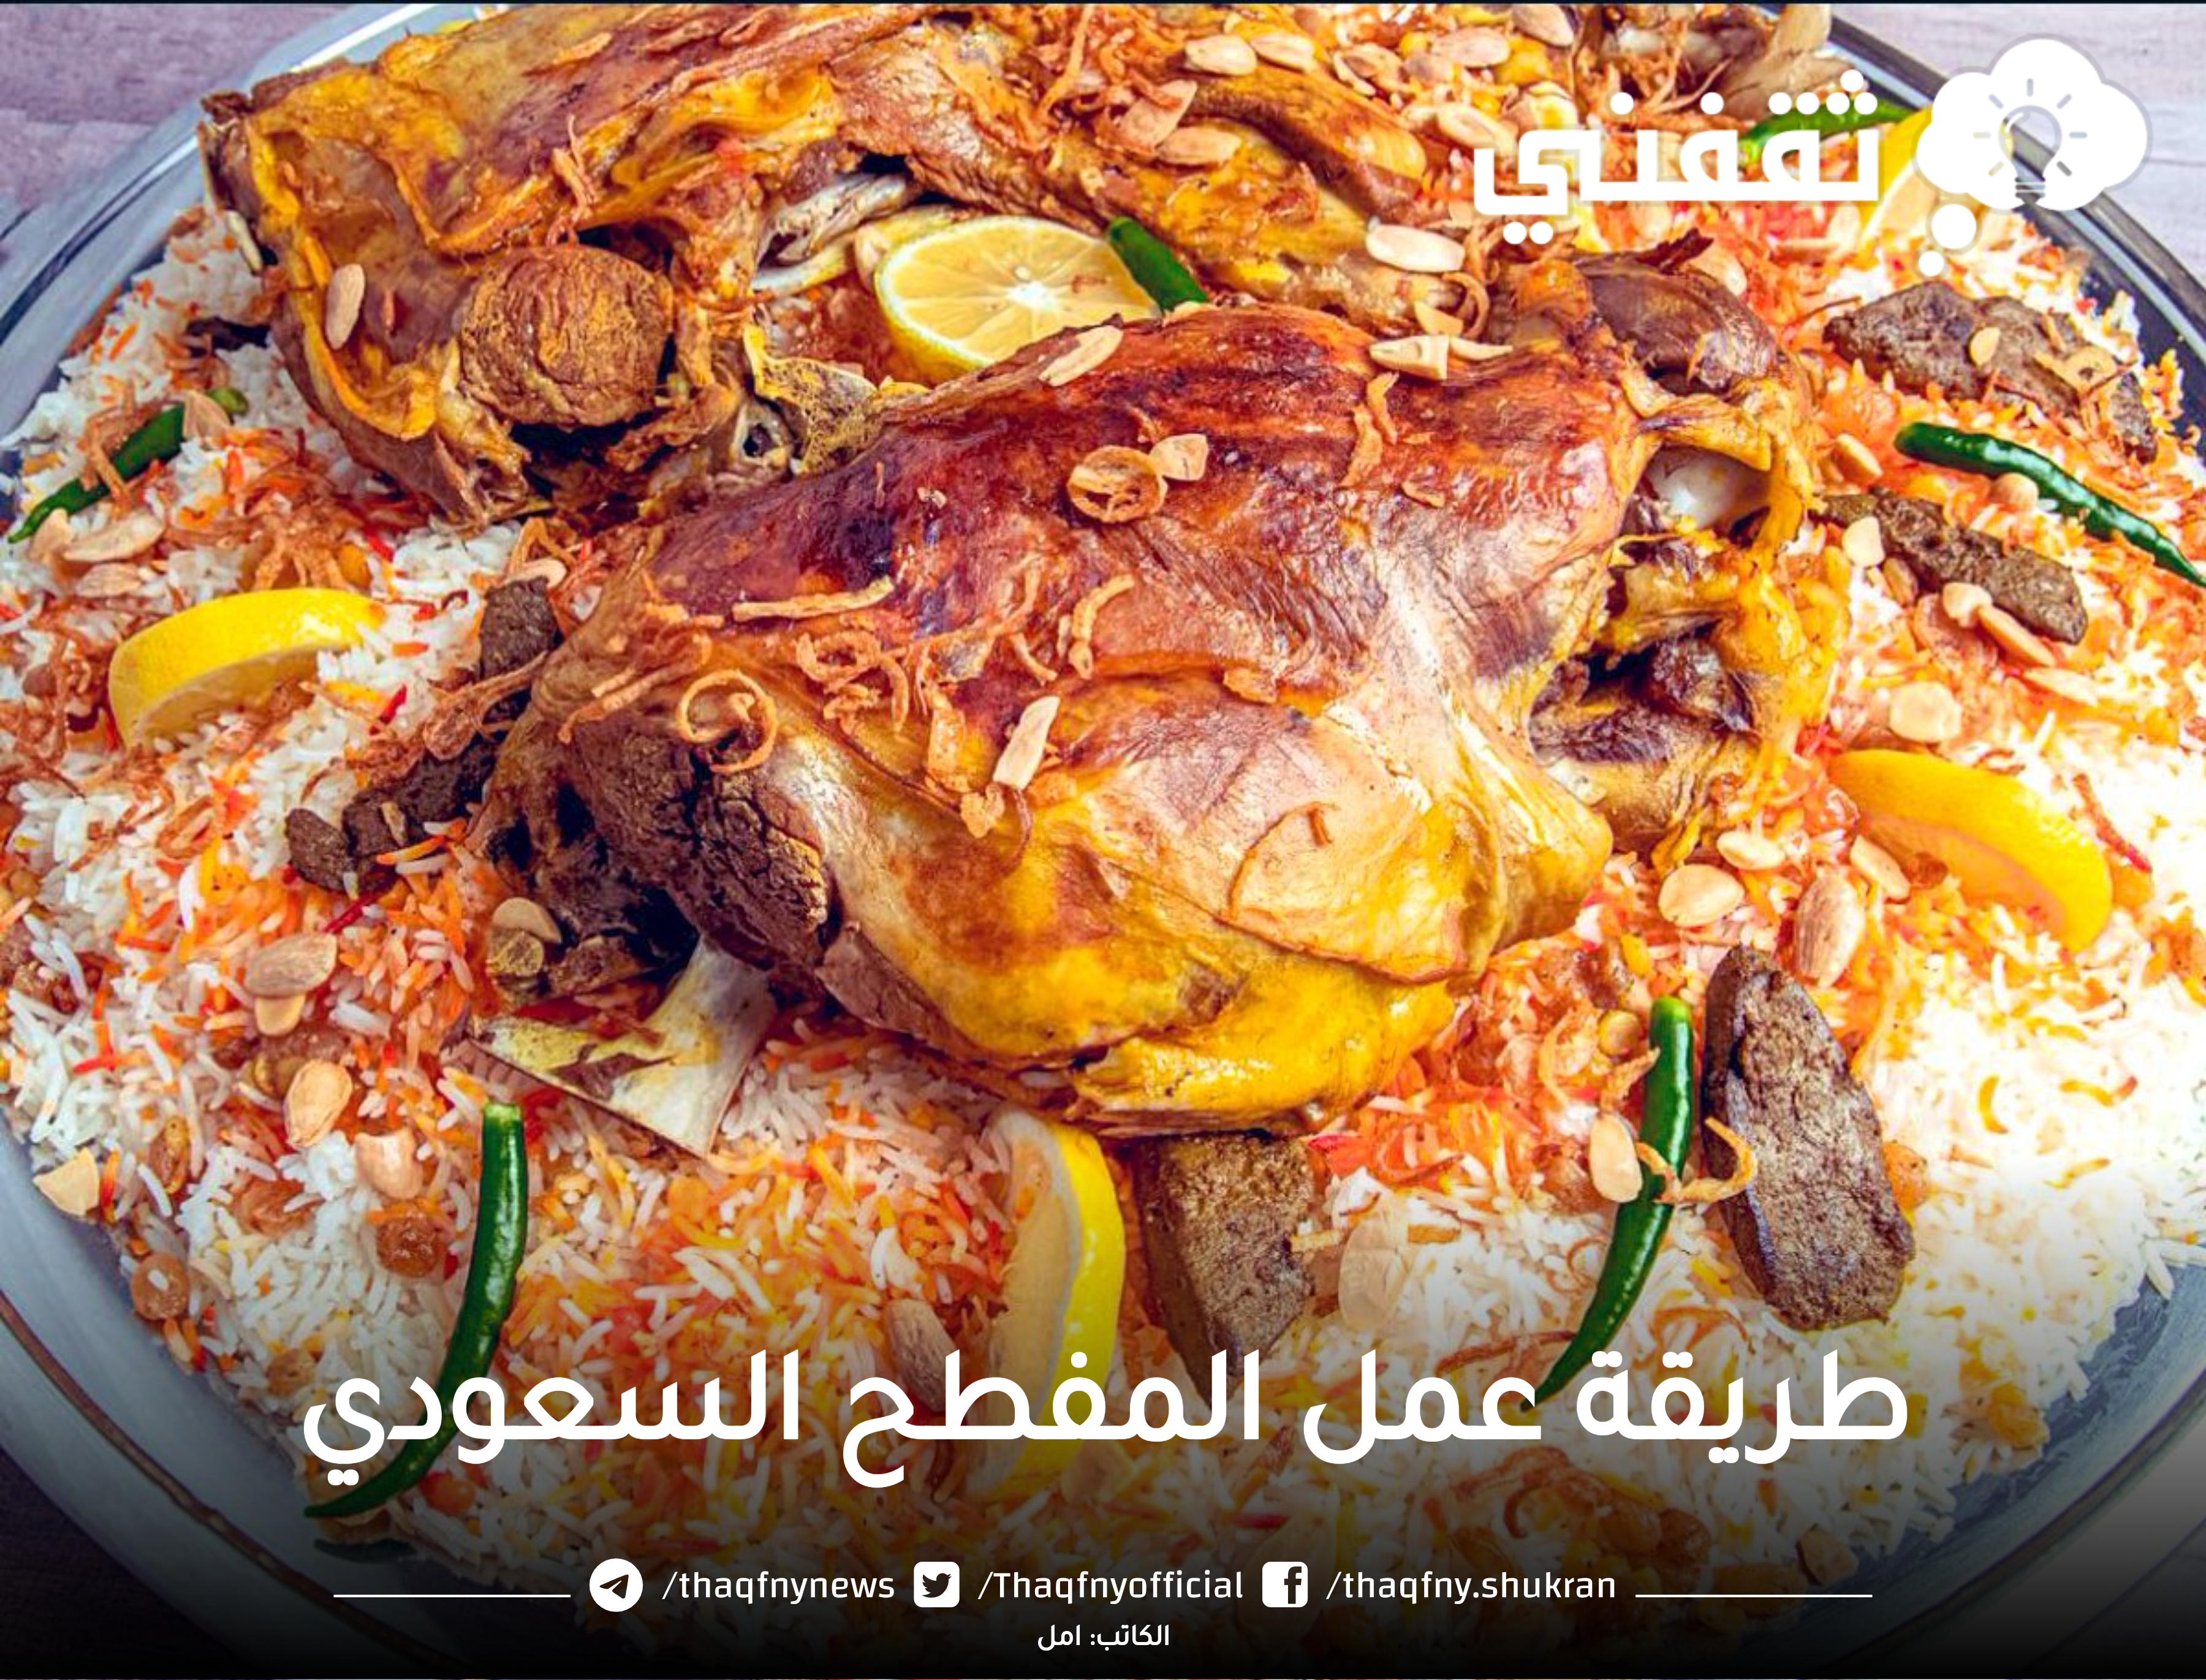 طريقة عمل المفطح السعودي في المنزل بخطوات بسيطة ومذاق شهي ولذيذ ويشبه المحلات